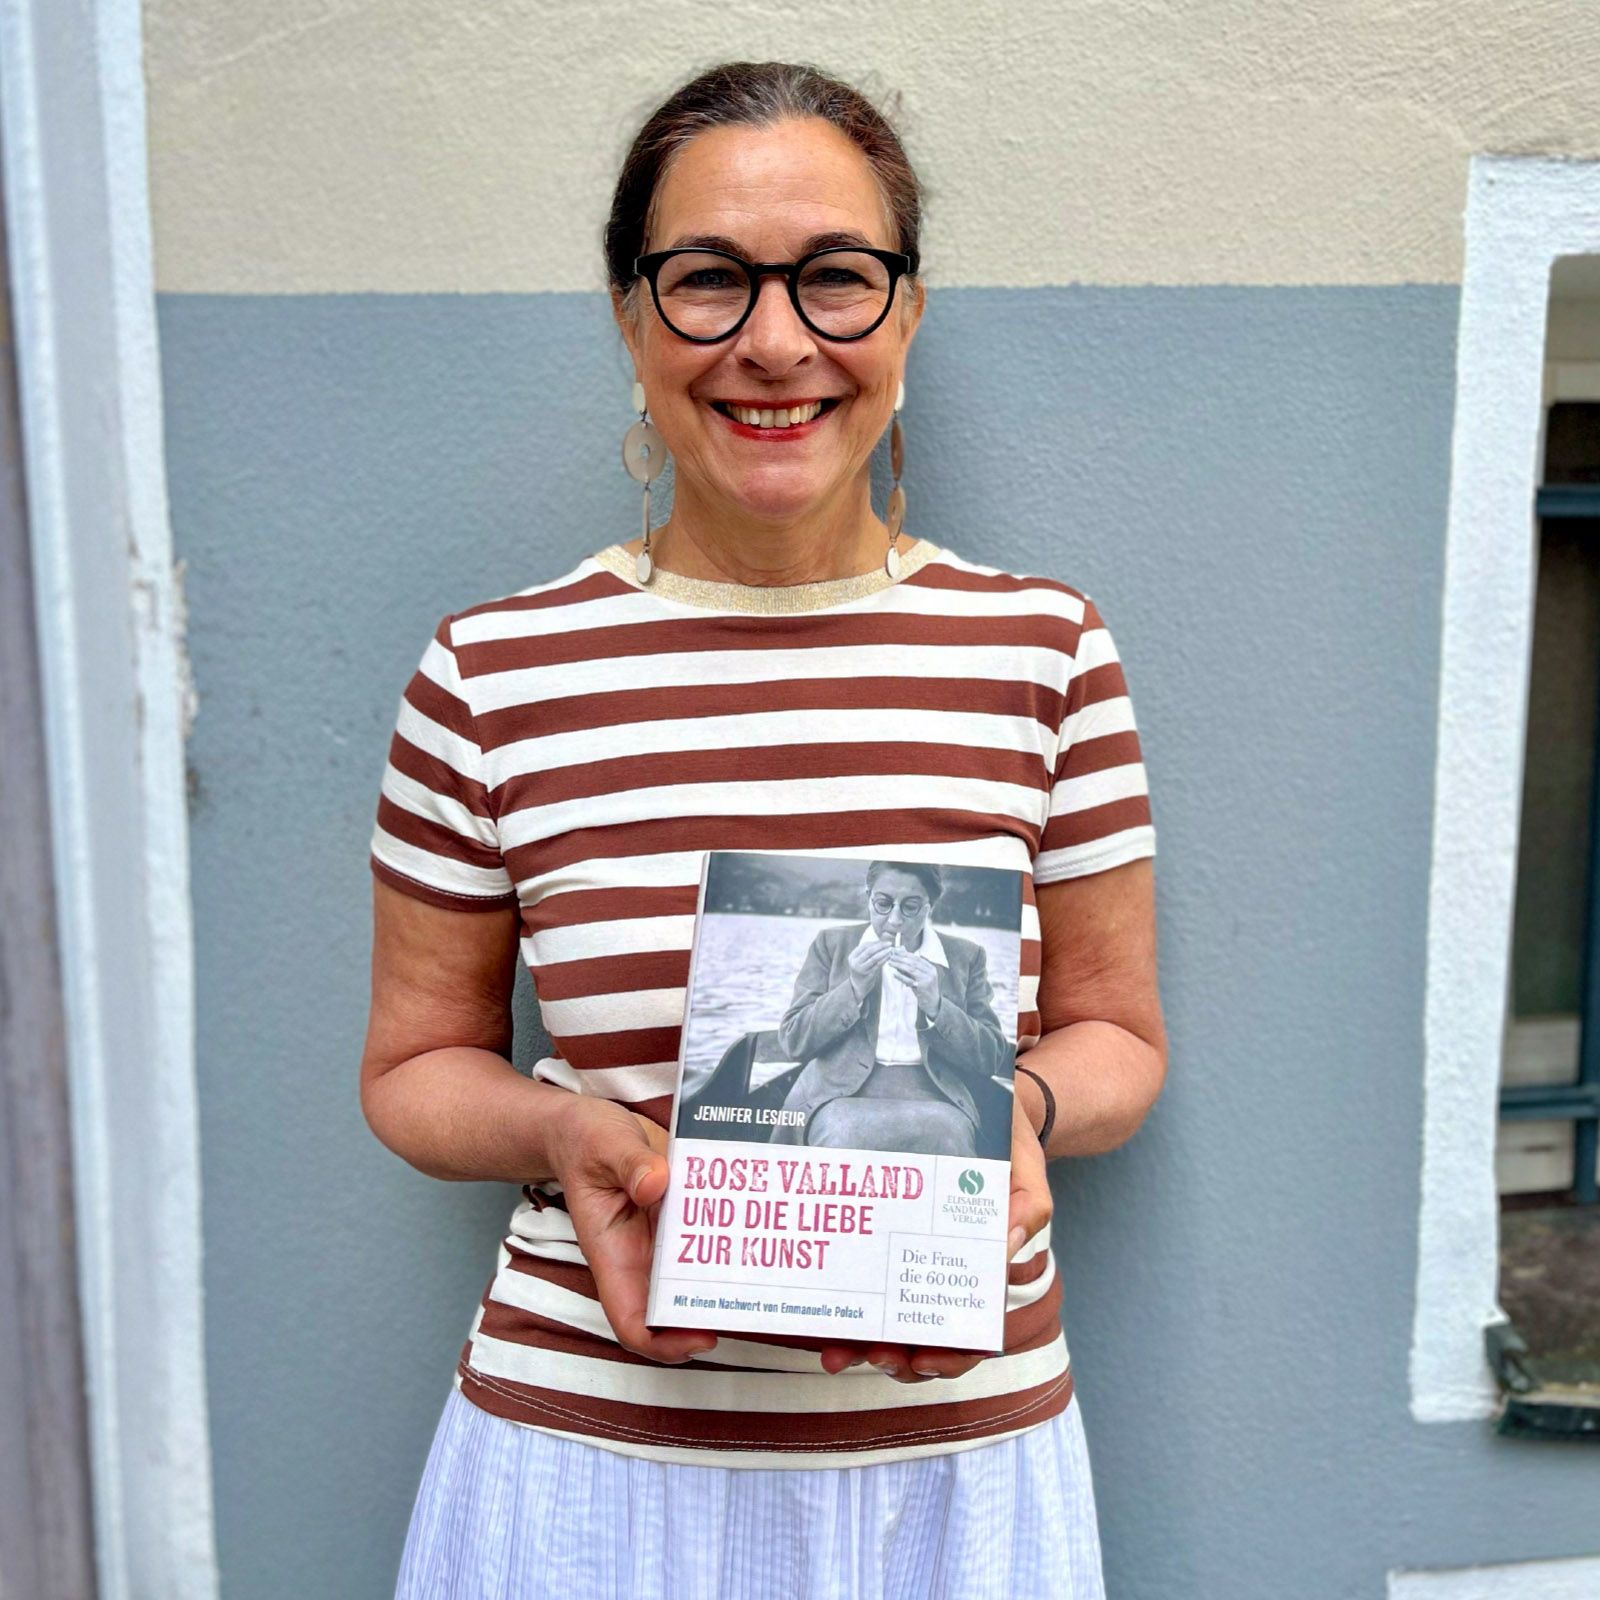 Elisabeth Sandmann (Elisabeth Sandmann Verlag) empfiehlt Rose Valland und die Liebe zur Kunst